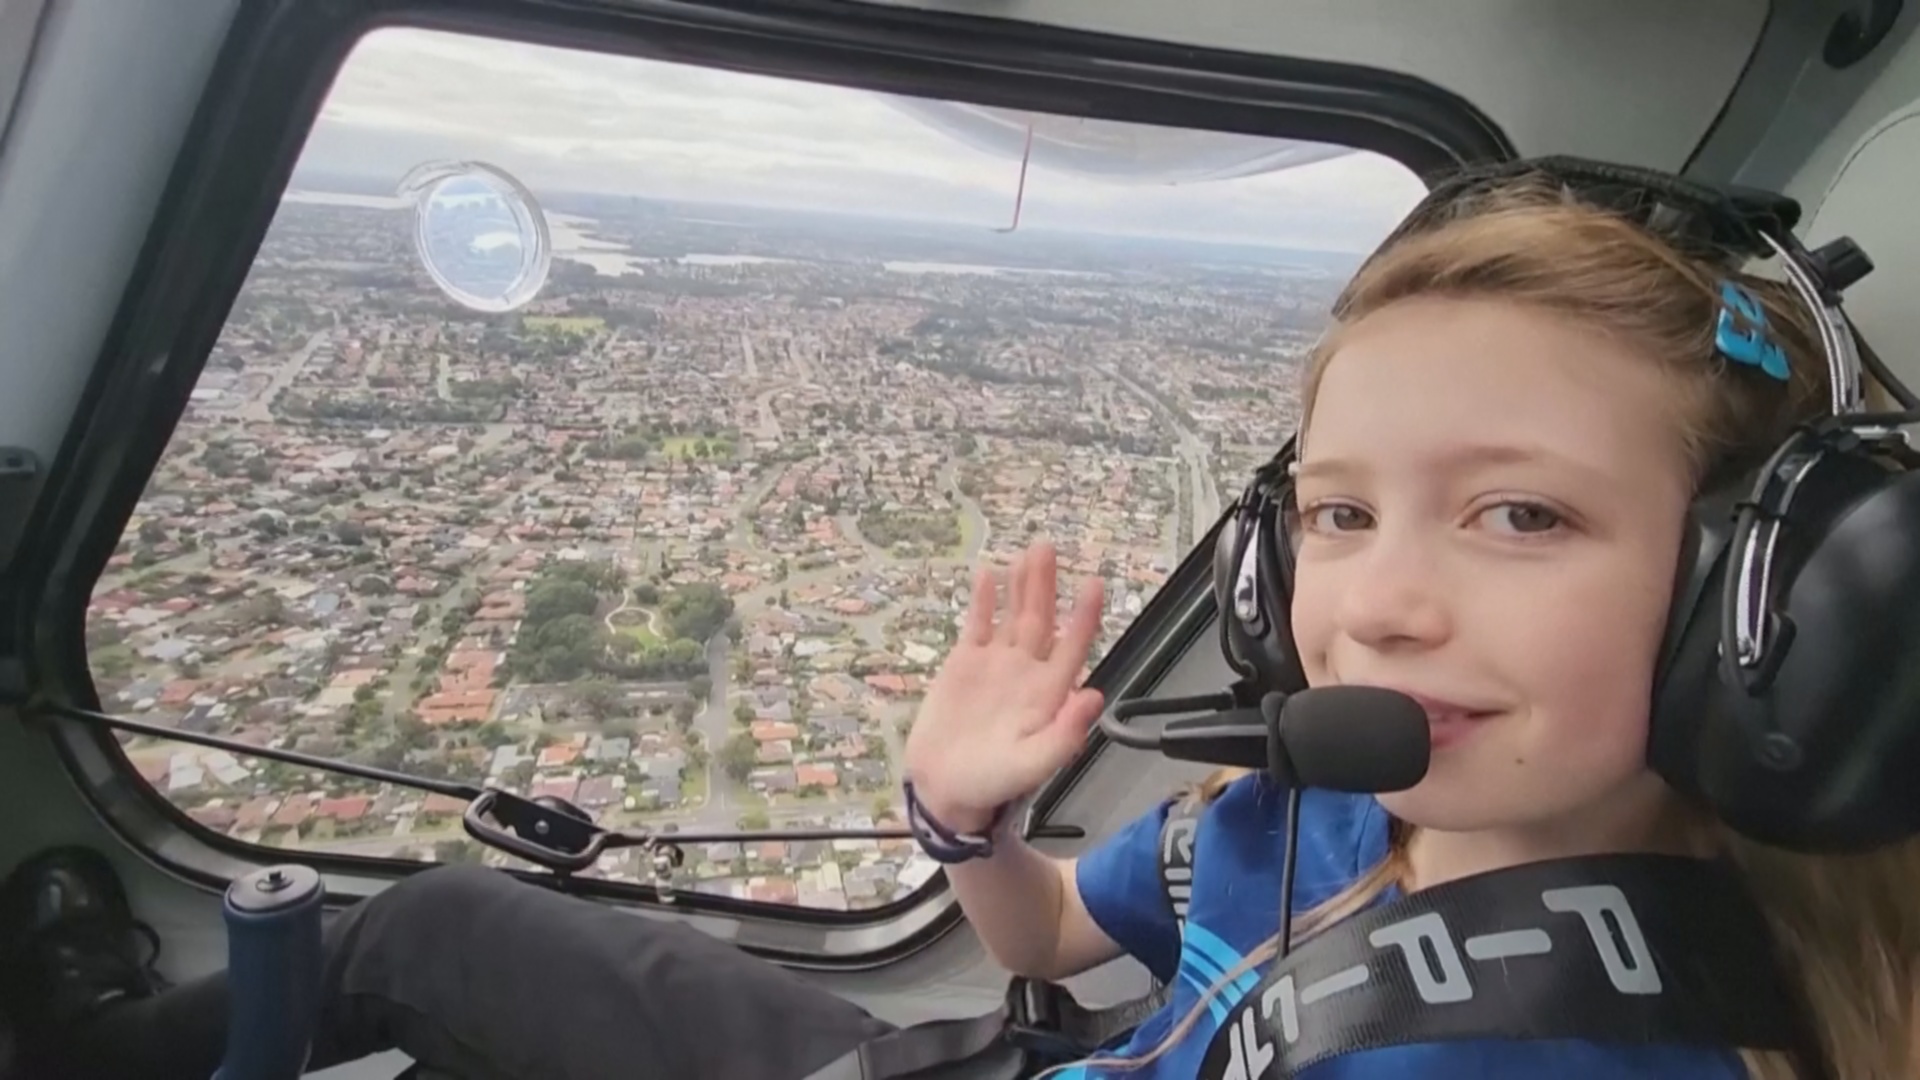 Австралийская девочка в 10 лет уже управляет самолётом